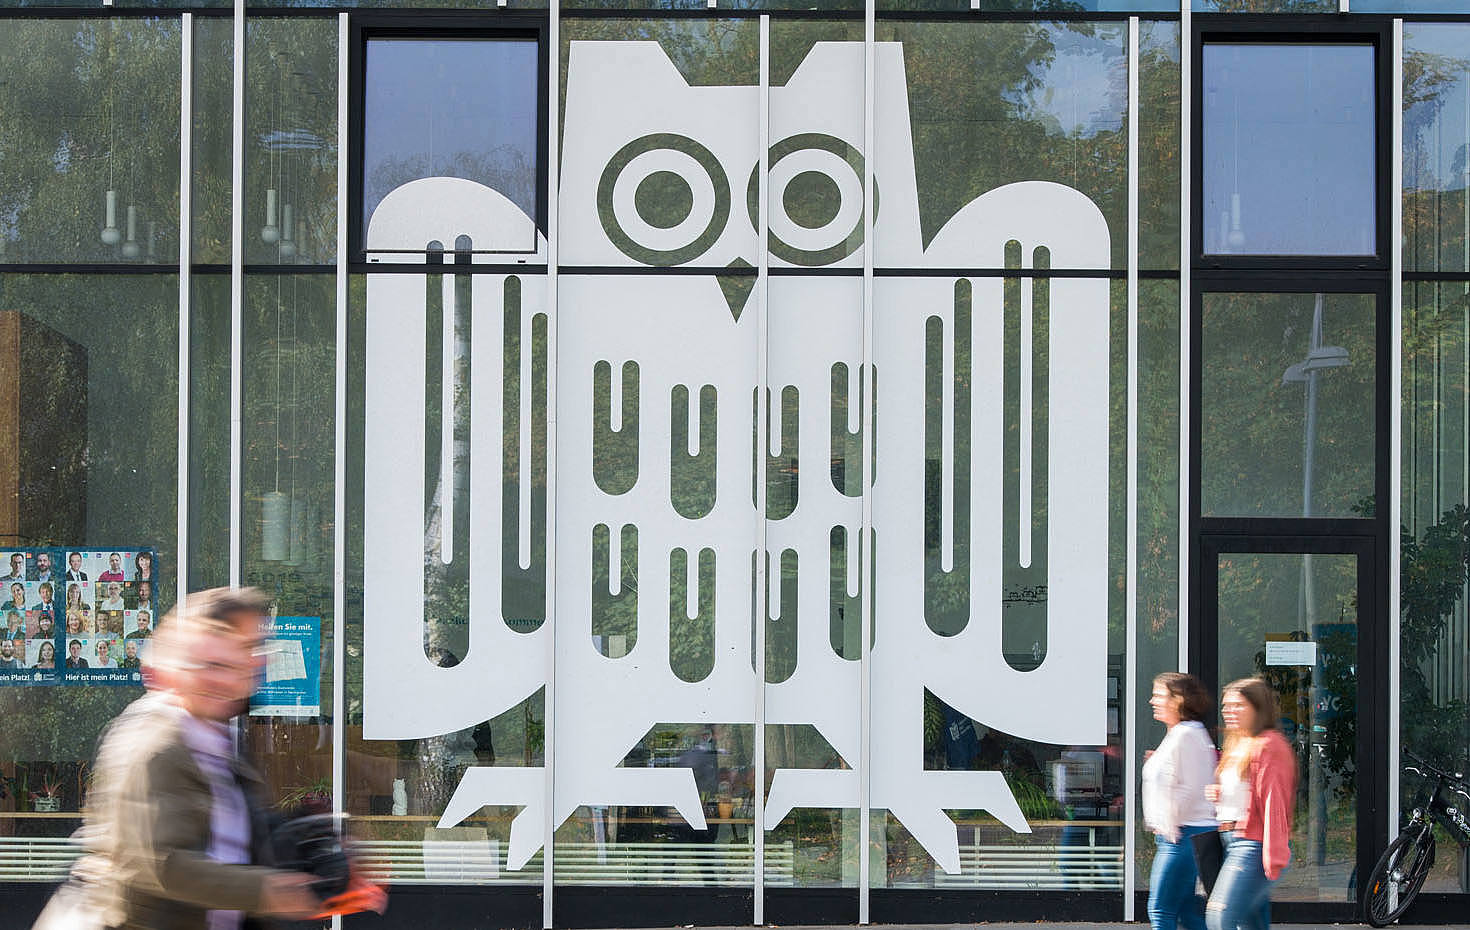 Ausschnitt eines Glasbaus mit großem weißen Logo der Universität des Saarlandes auf den Fenstern